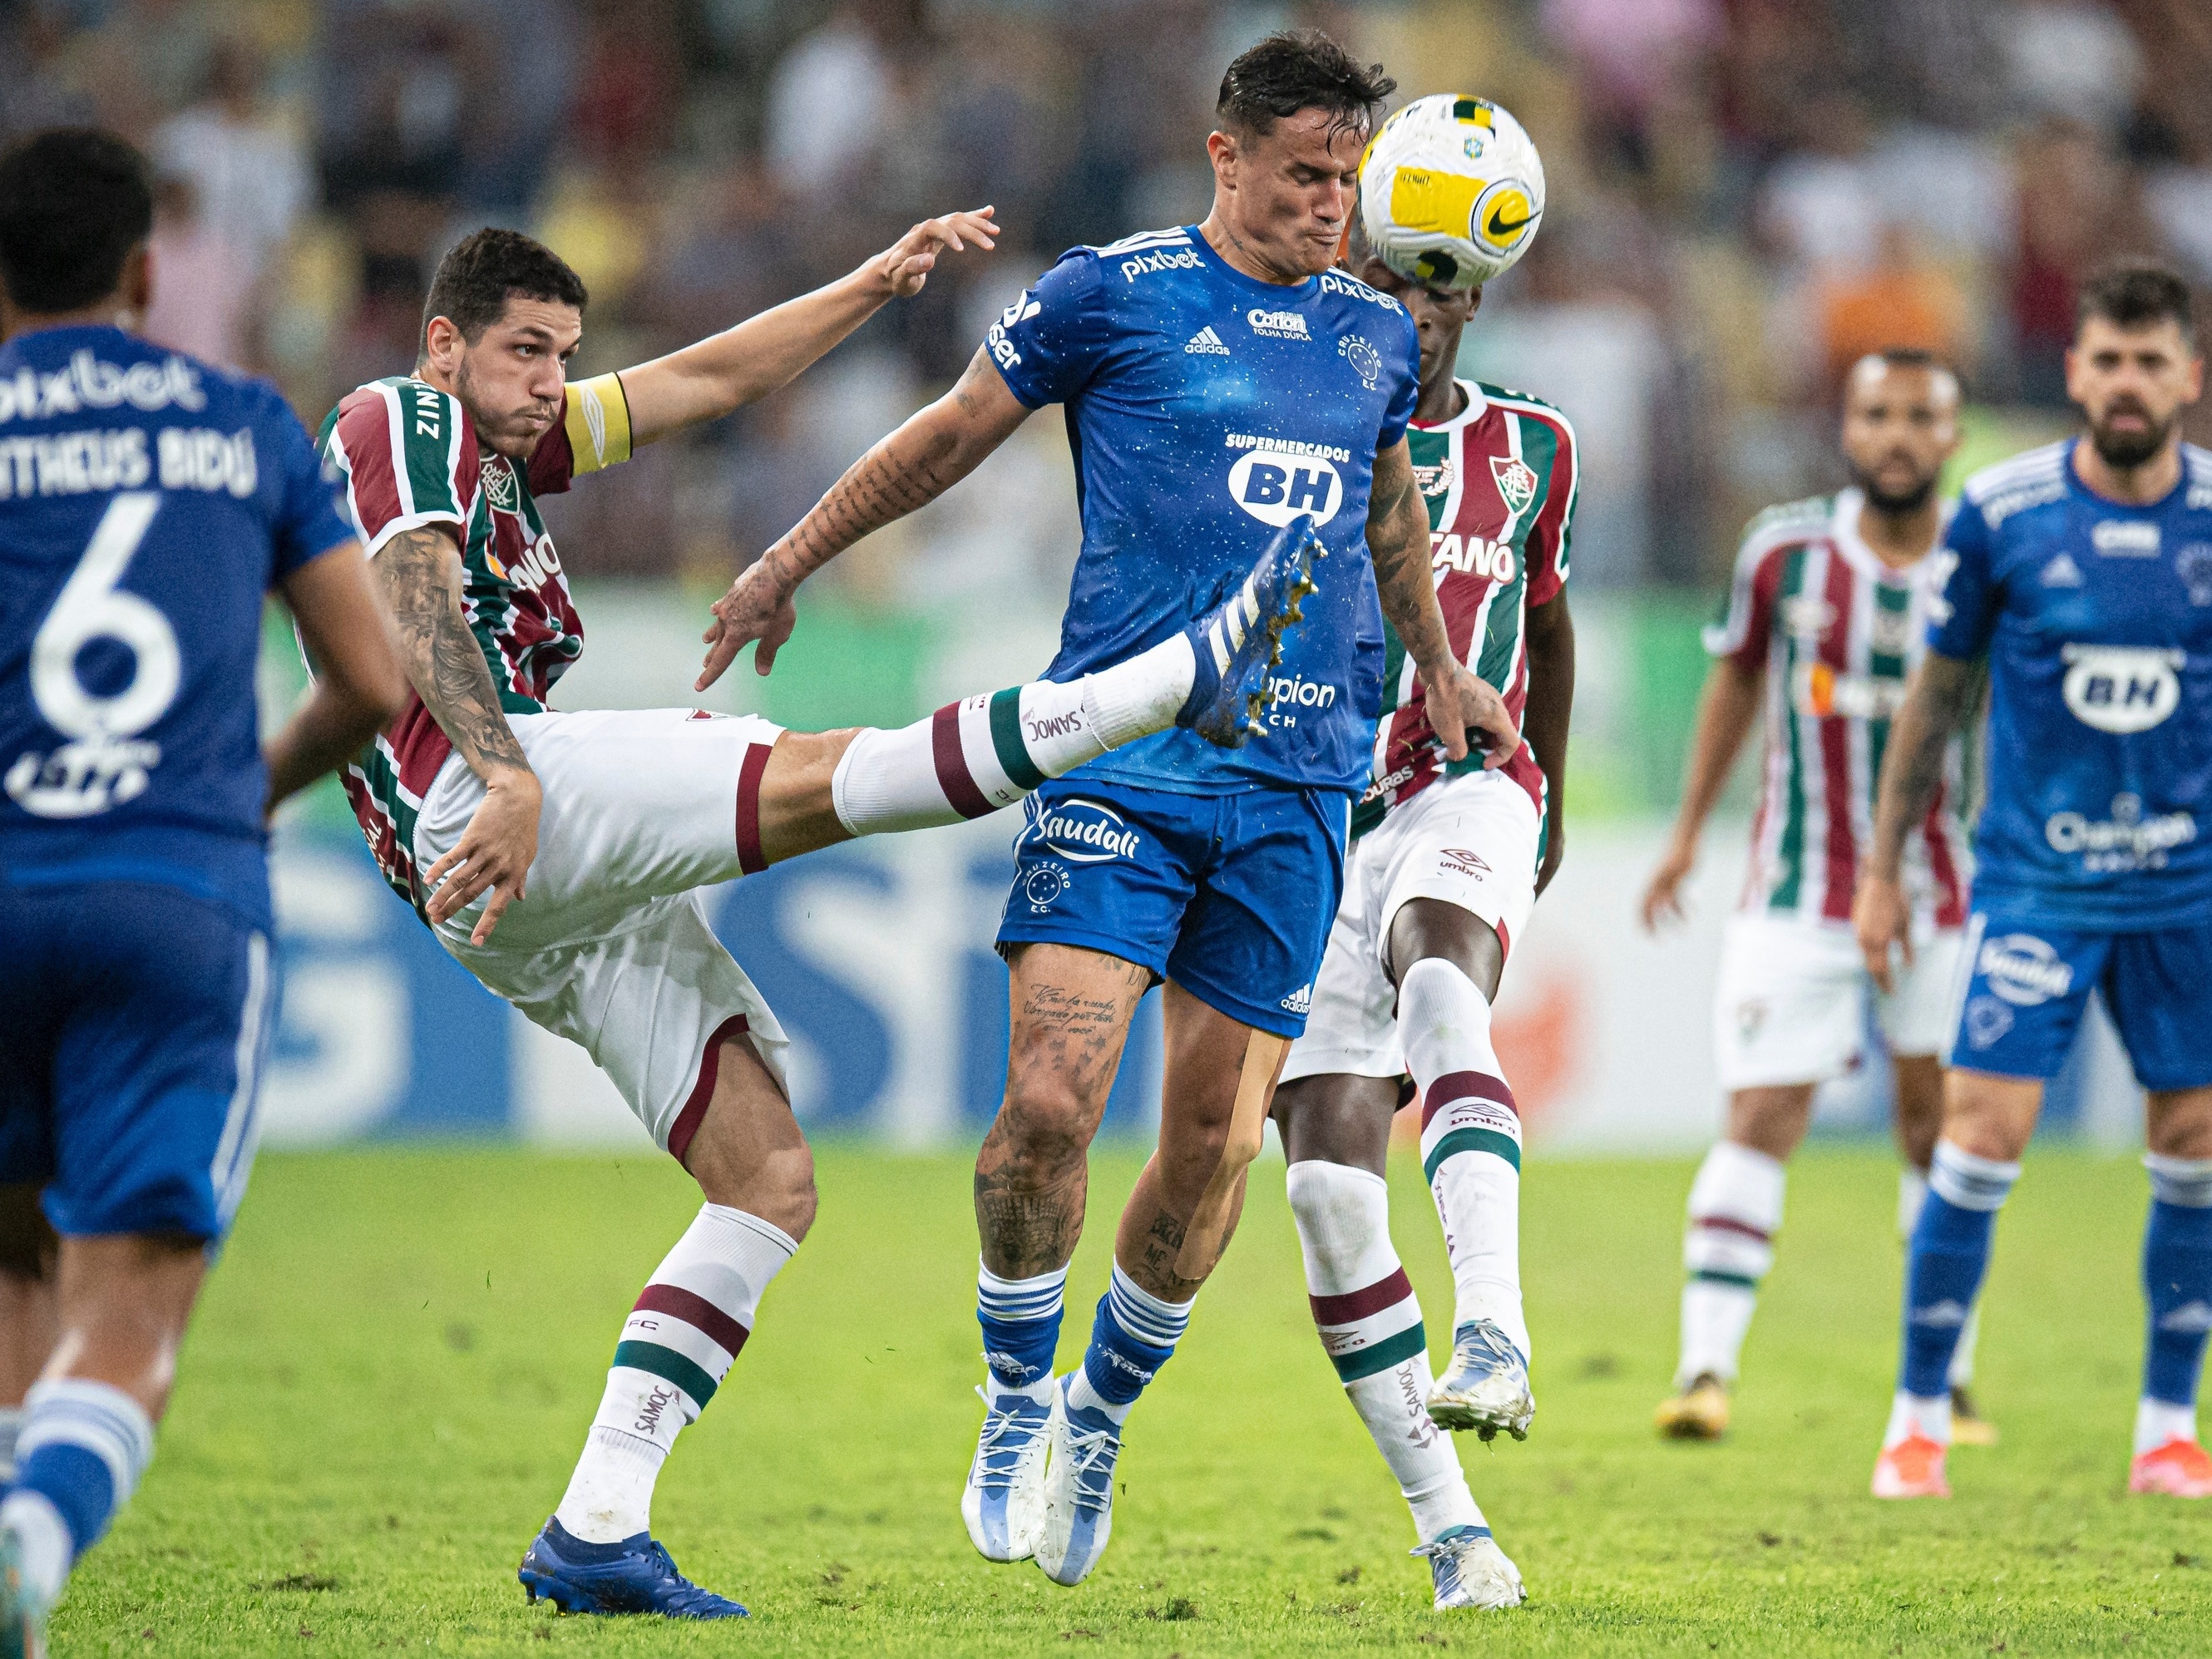 É HOJE, #Fluminense x #Cruzeiro jogam pelo #CampeonatoBrasileiro de #futebol.  Durante os últimos 42 jogos, o Fluminense ganhou 20 partidas,…